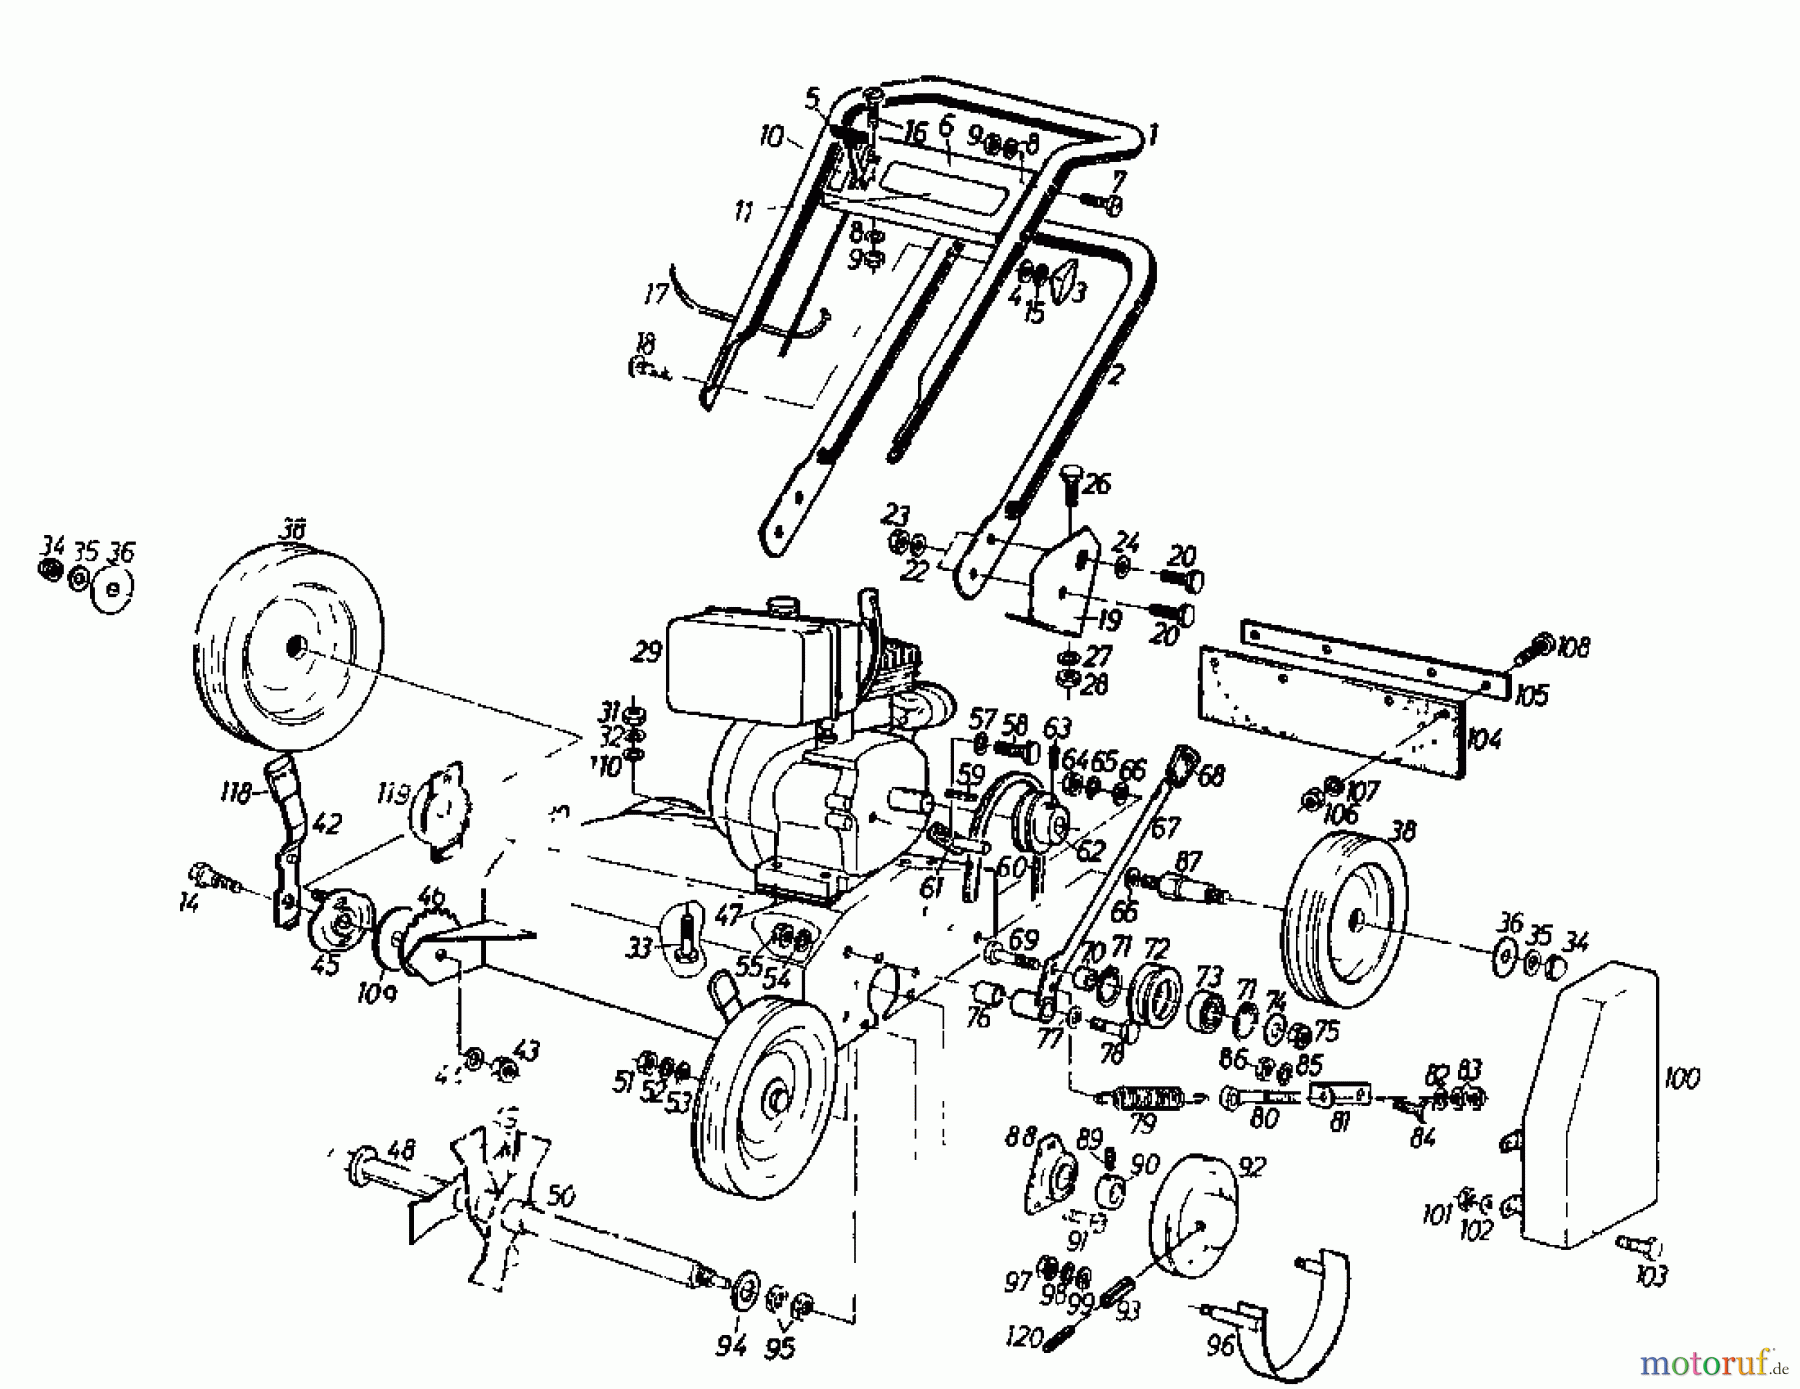  Gutbrod Petrol verticutter VS 50 A 00053.01  (1985) Basic machine